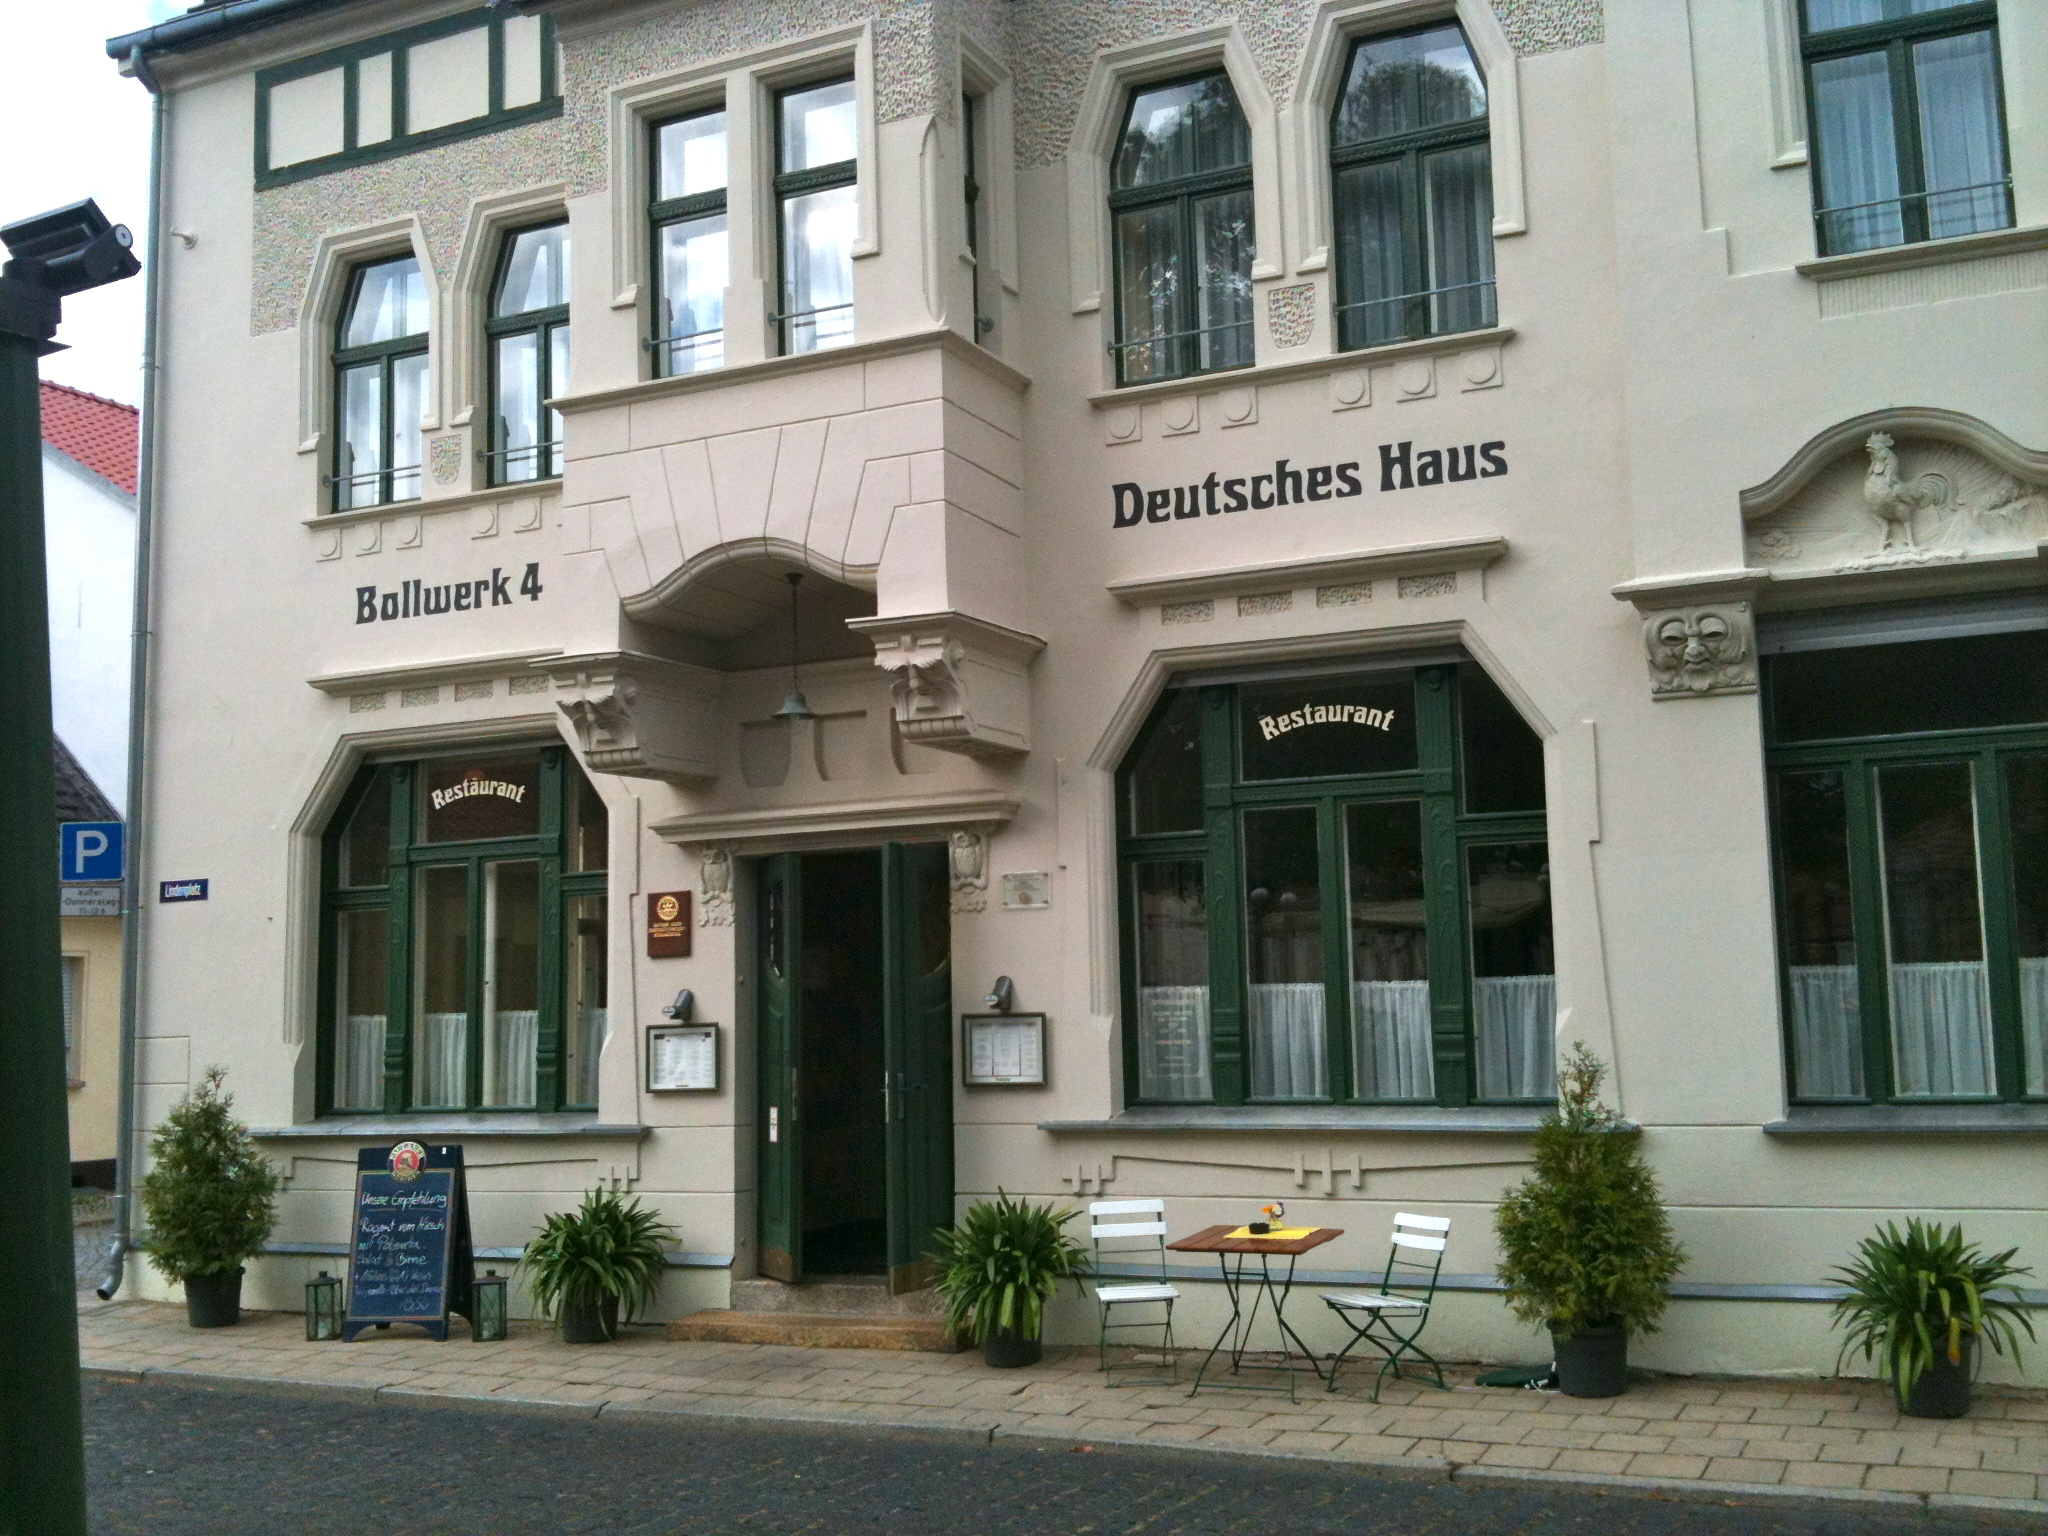 Bild 2 Bollwerk 4 im Deutschen Haus Inh. Familie Krüger in Eisenhüttenstadt